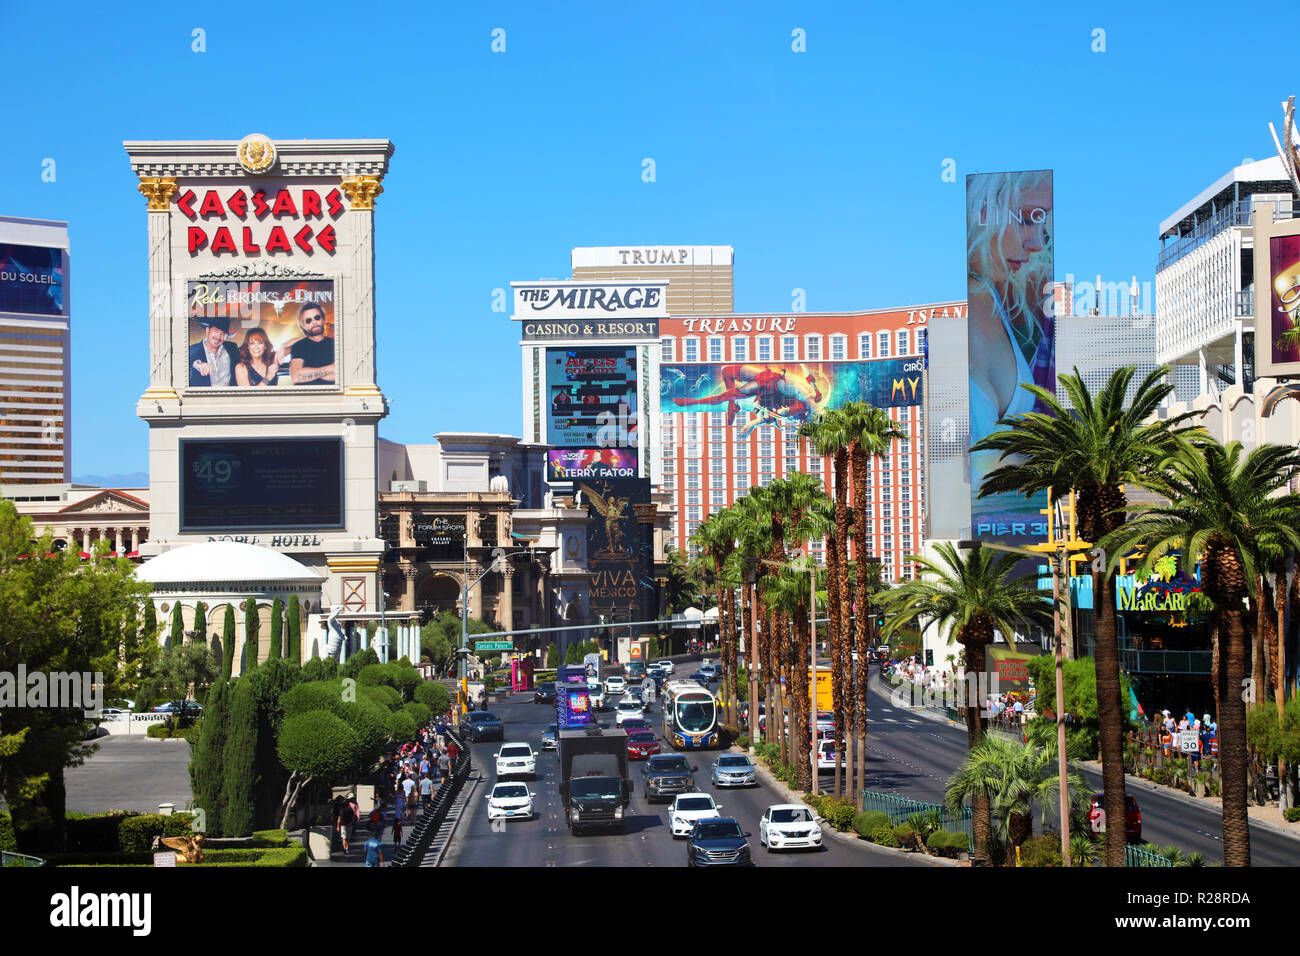 Caesars Palace Hotel On The Las Vegas Strip Stock Photo - Download Image  Now - Caesars Palace - Las Vegas, Las Vegas, Hotel - iStock